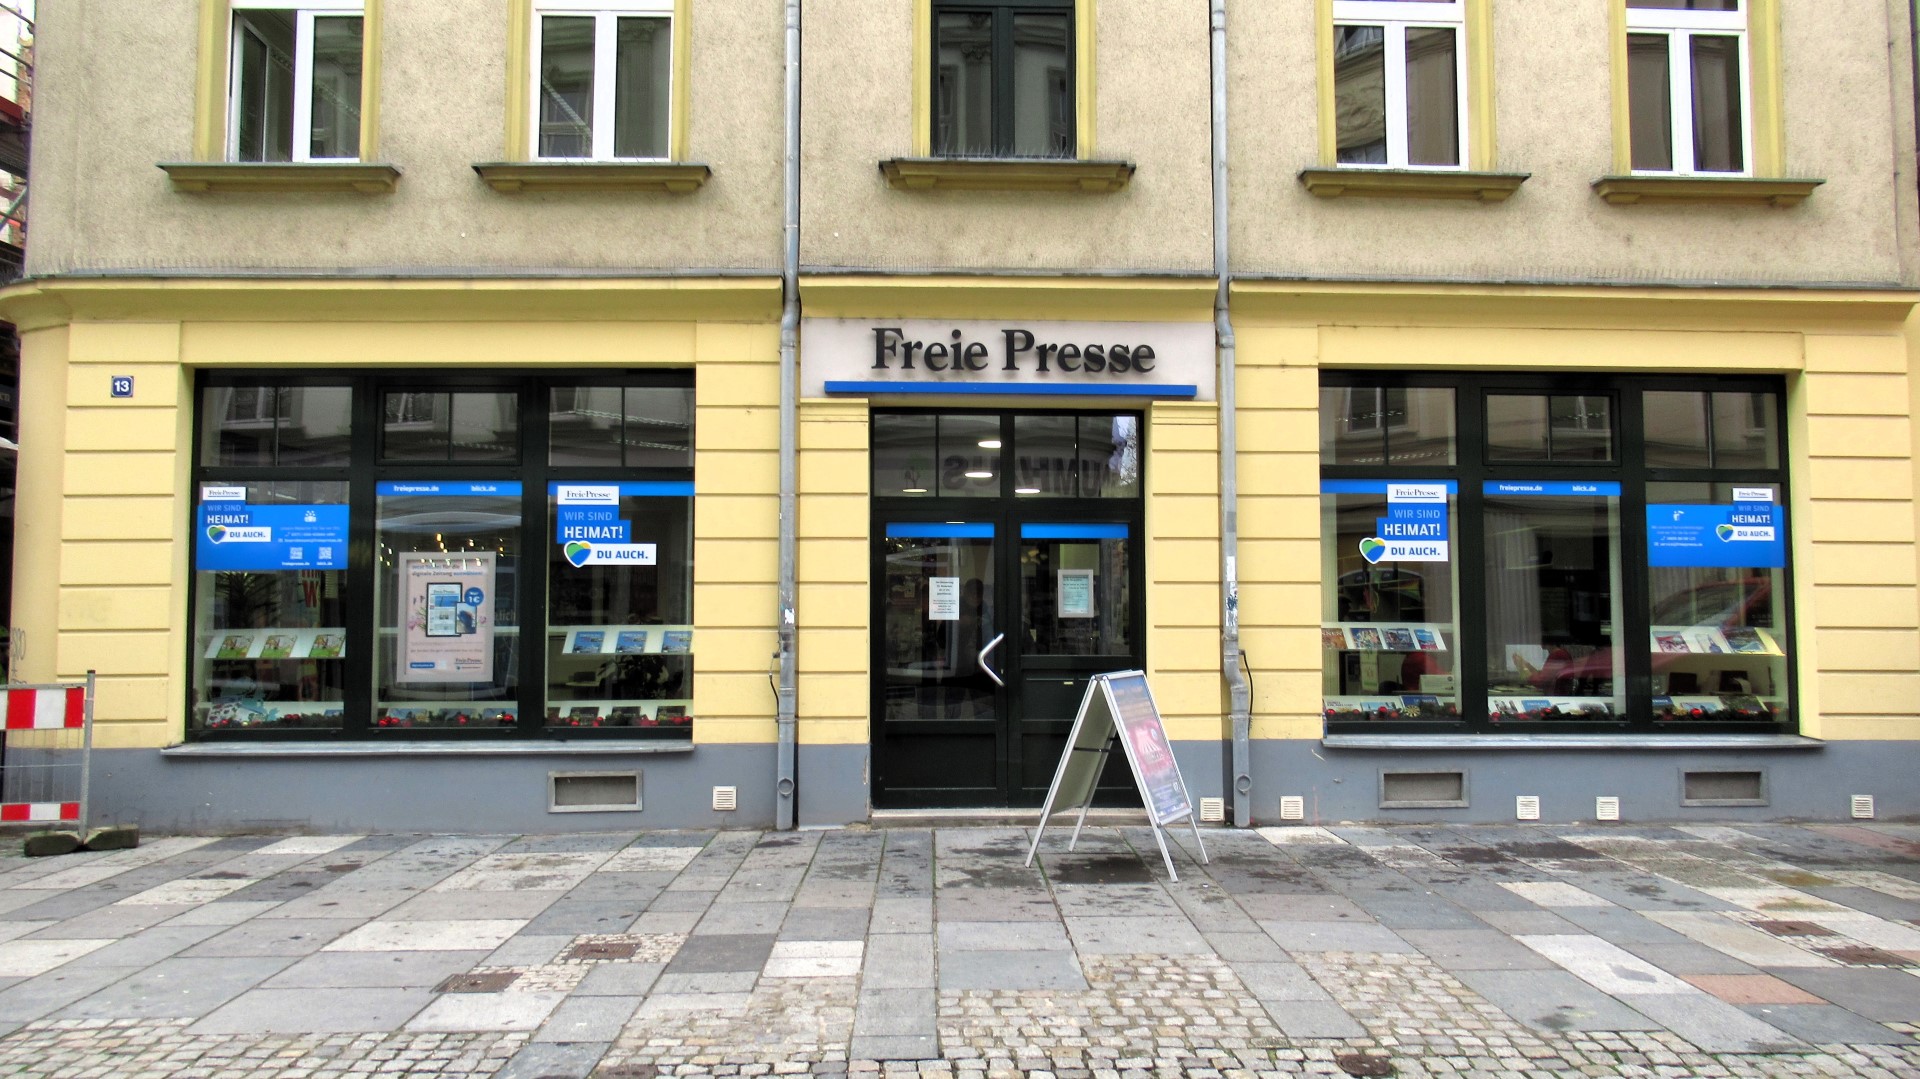 Bild 4 Freie Presse Shop in Zwickau